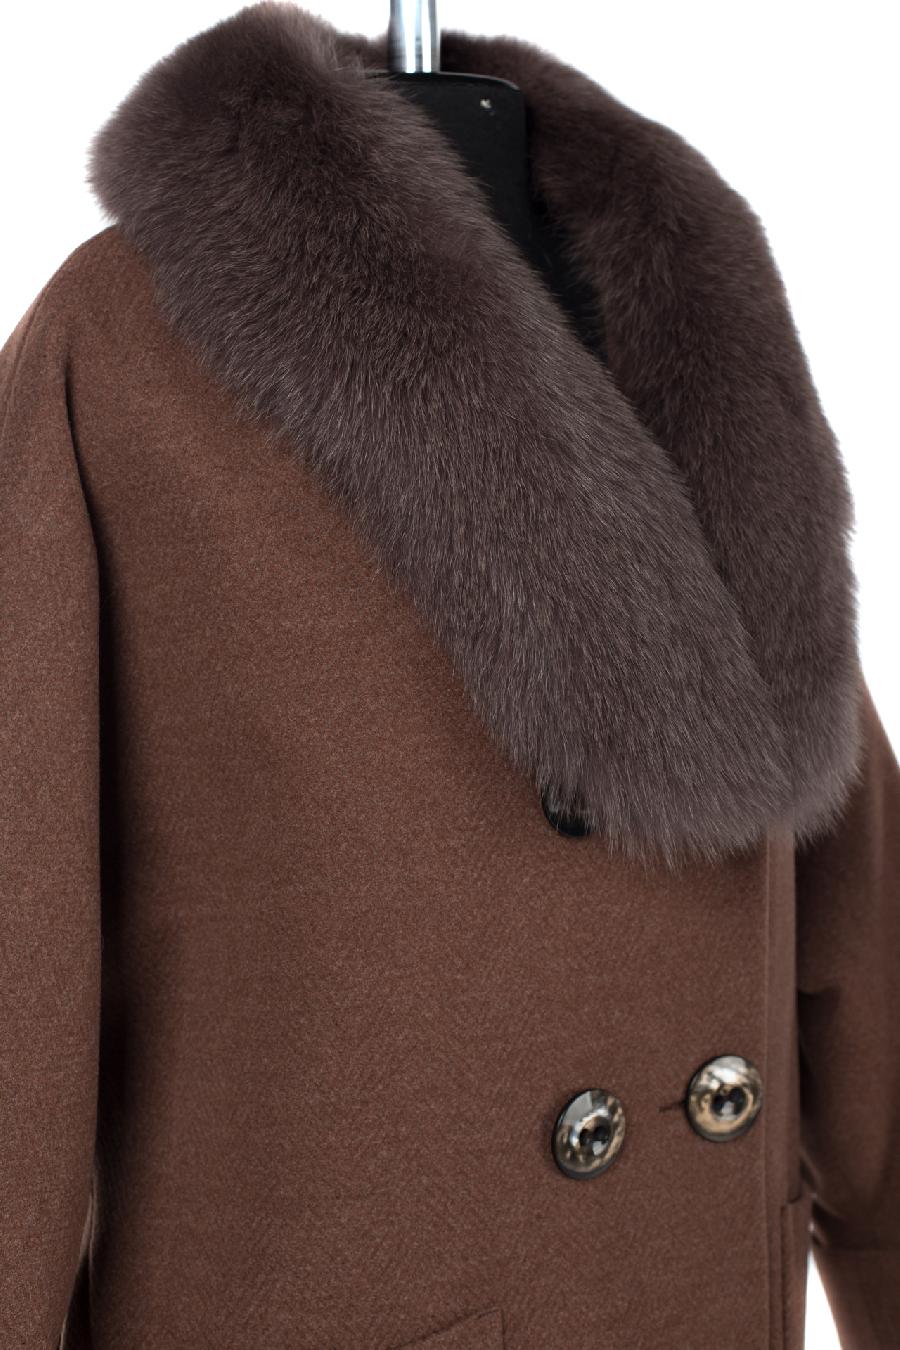 02-2913 Пальто женское утепленное Микроворса коричневый